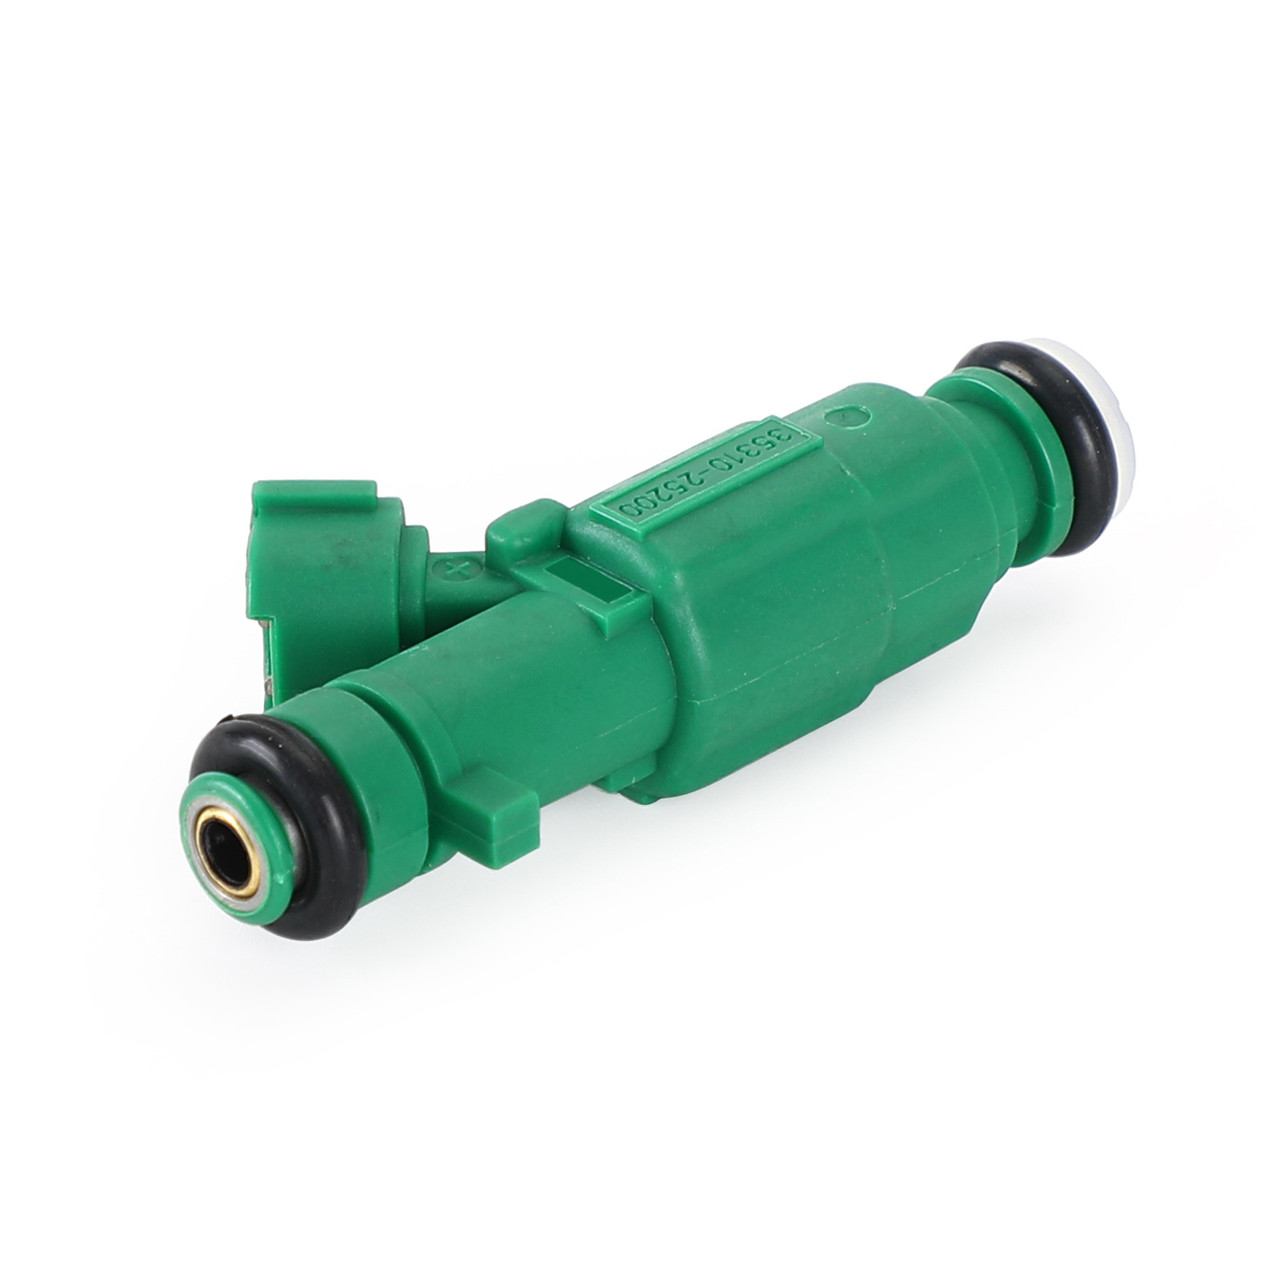 4PCS Fuel Injectors 35310-25200 Fit For Kia Optima 2.4L I4 06-08 Rondo 2.4L I4 07-09 Green